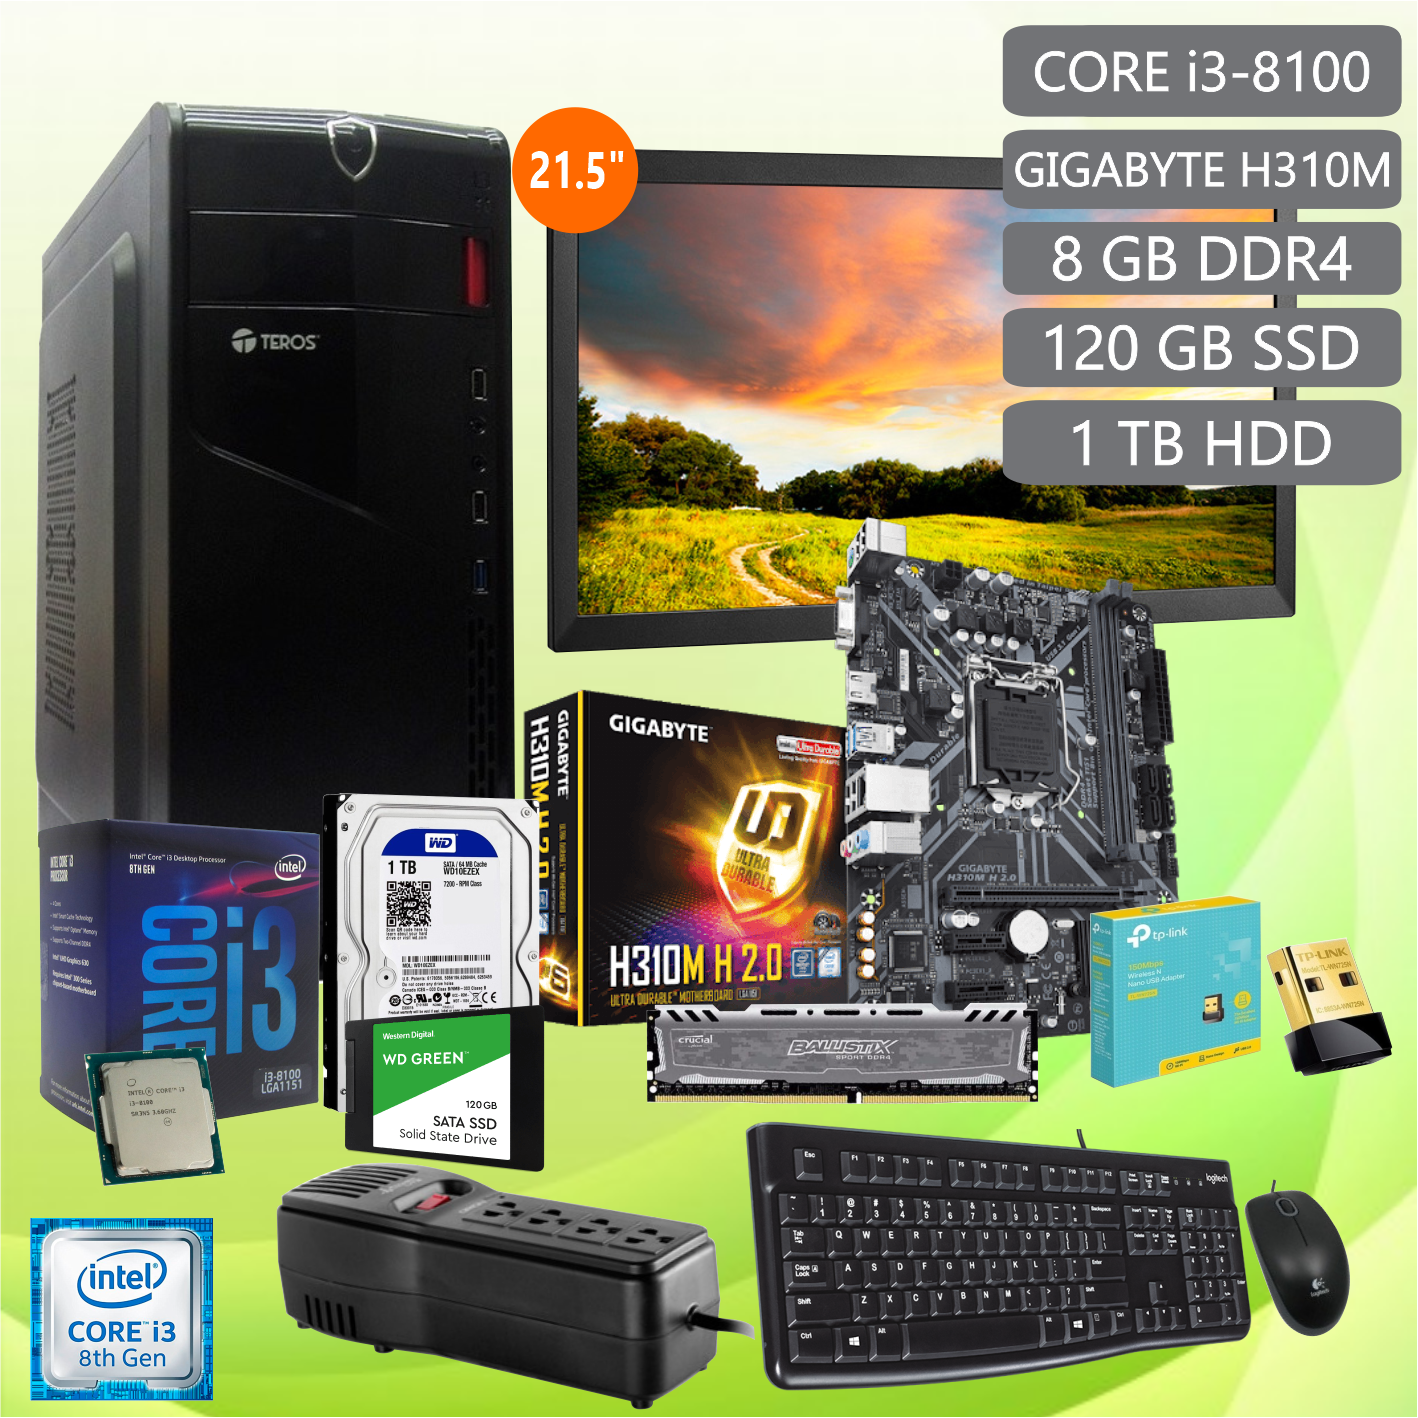 PC Core i3 8va, 8 GB DDR4, 1 TB HDD, 120 GB SSD, Case Teros ATX-450W